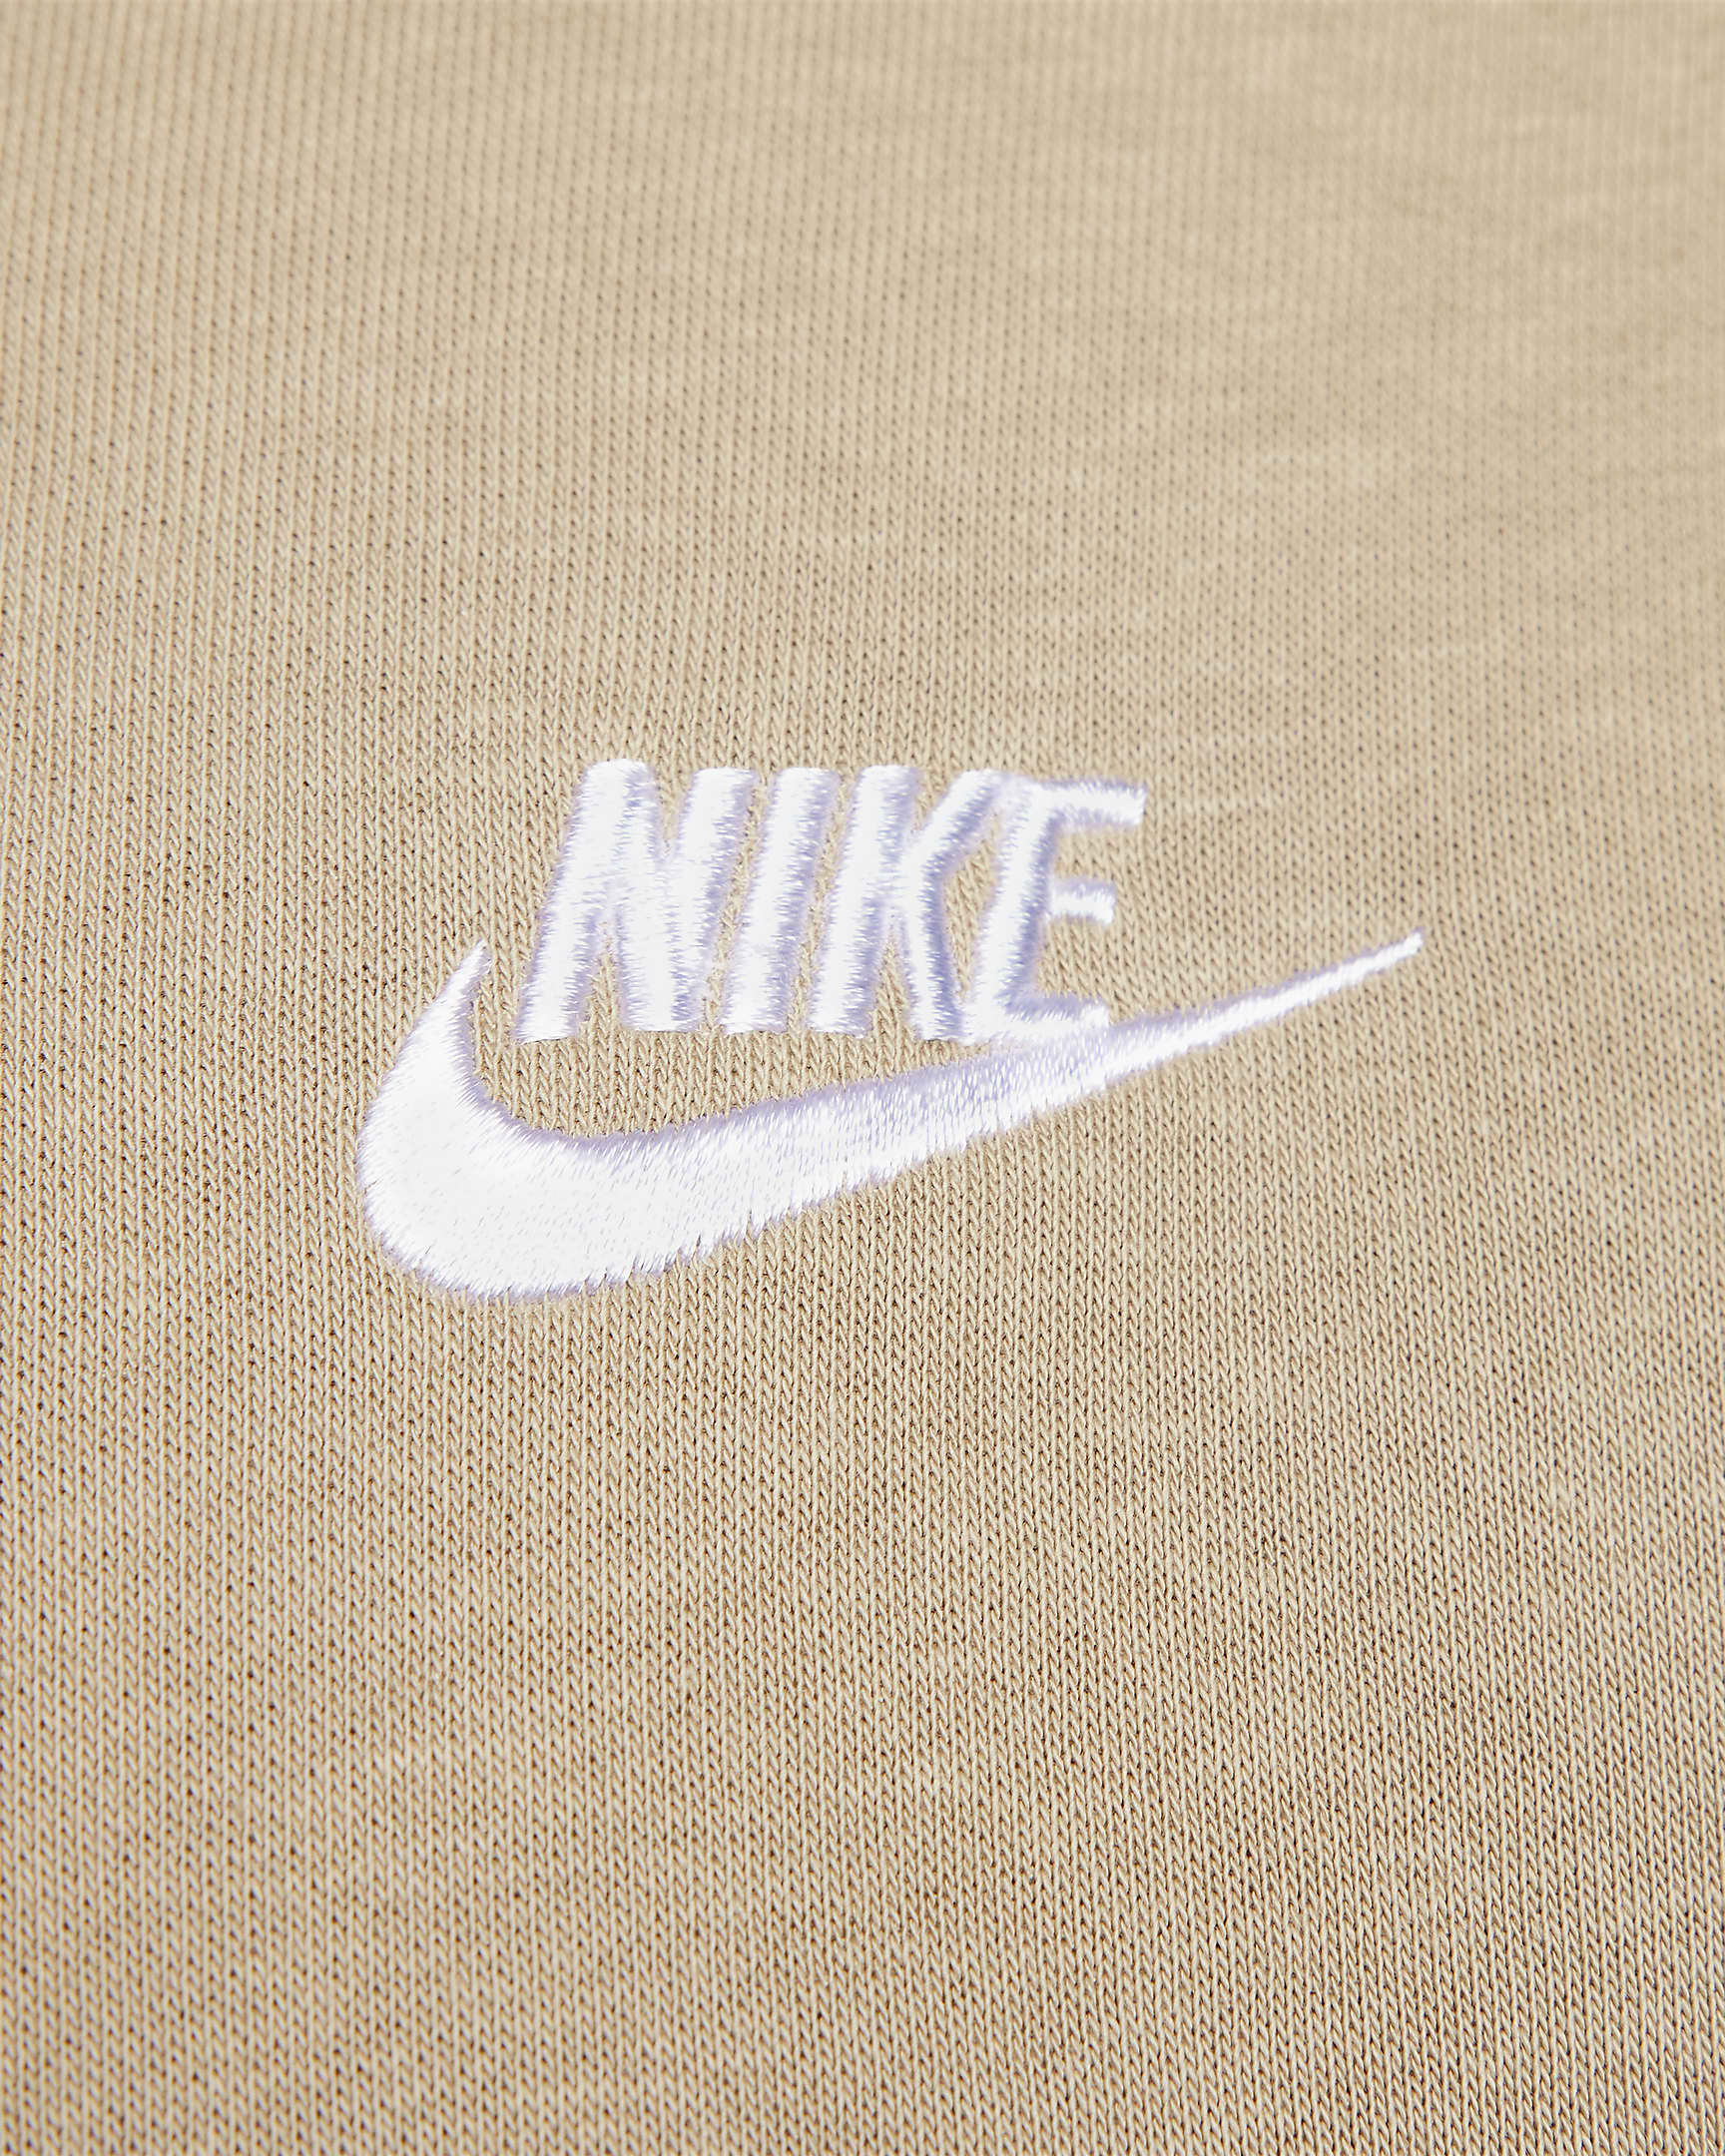 Nike Sportswear Club Fleece Hoodie - Khaki/Khaki/Wit